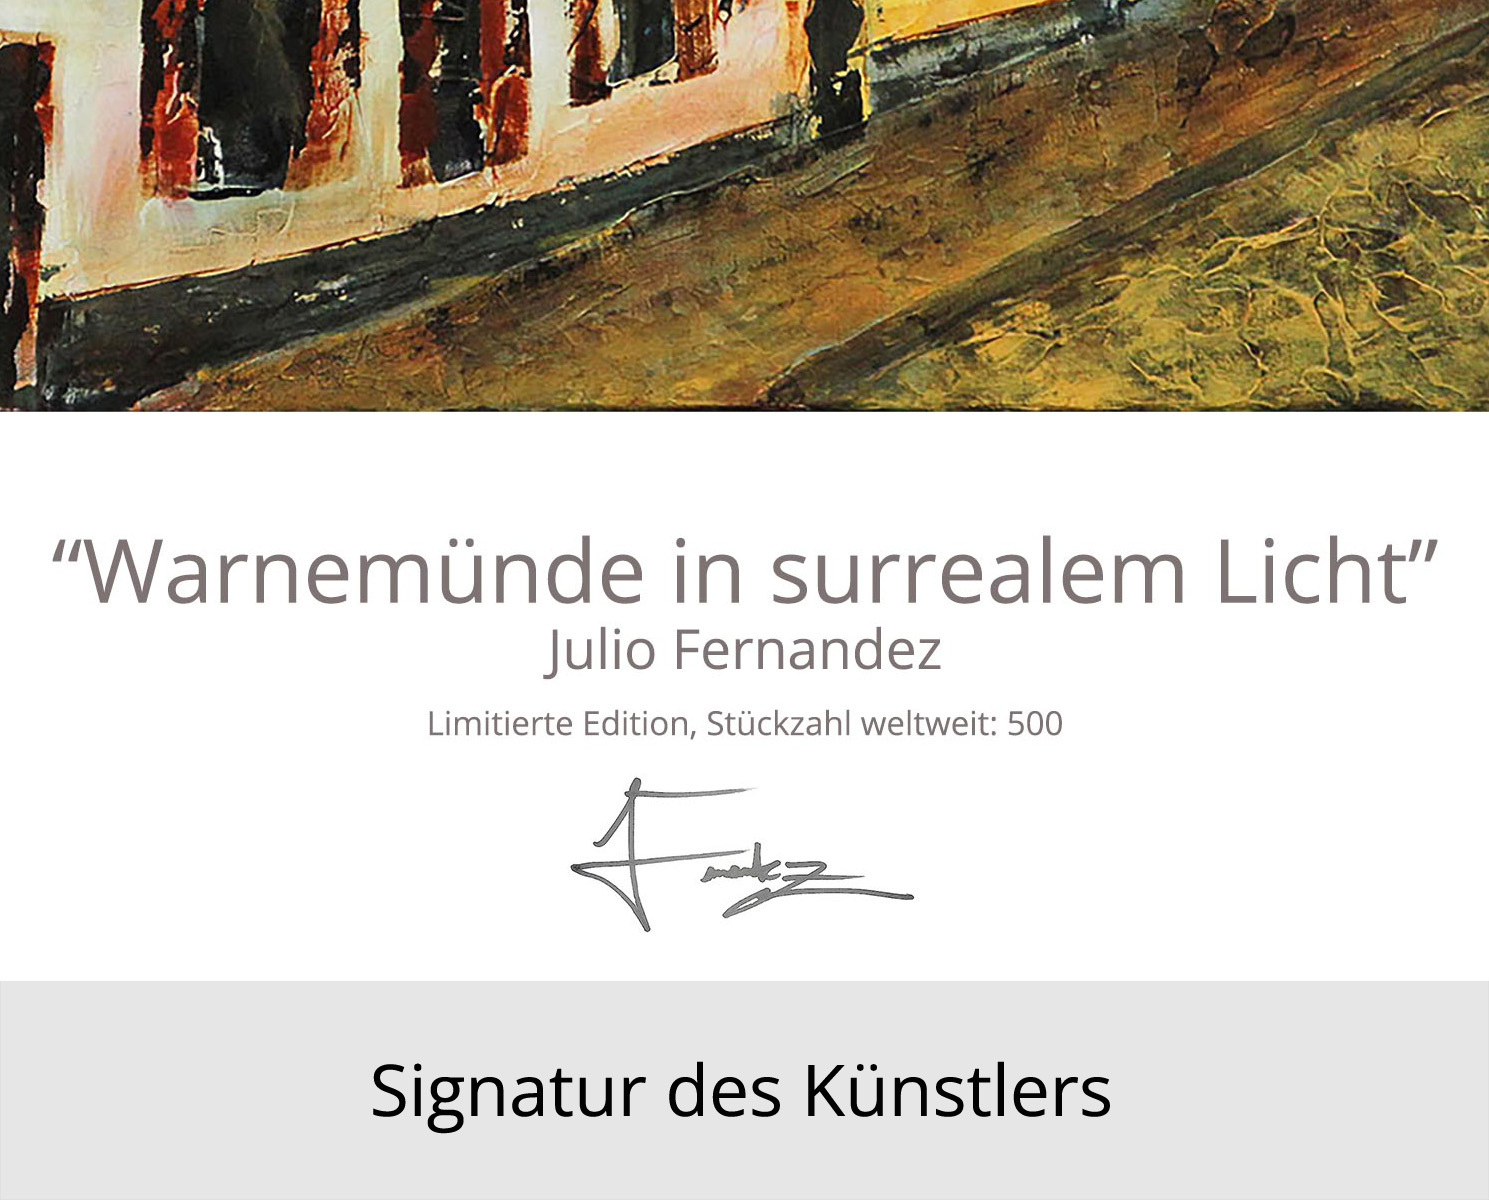 Limitierte Edition auf Papier, J. Fernandez "Warnemünde in surrealem Licht", Fineartprint